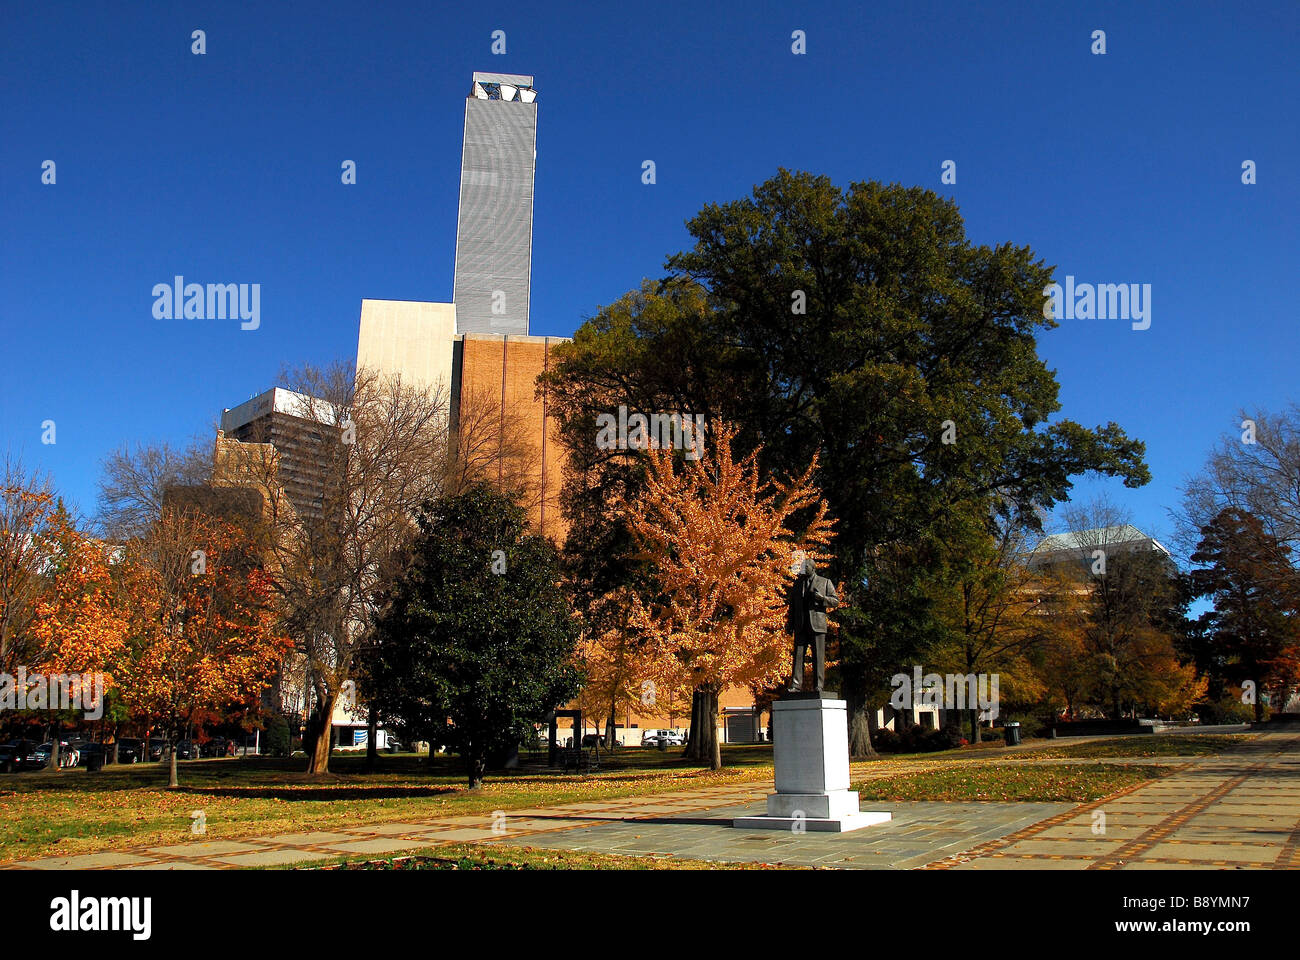 Kelly Ingram Park, Birmingham, Alabama, États-Unis d'Amérique, Amérique du Nord Banque D'Images